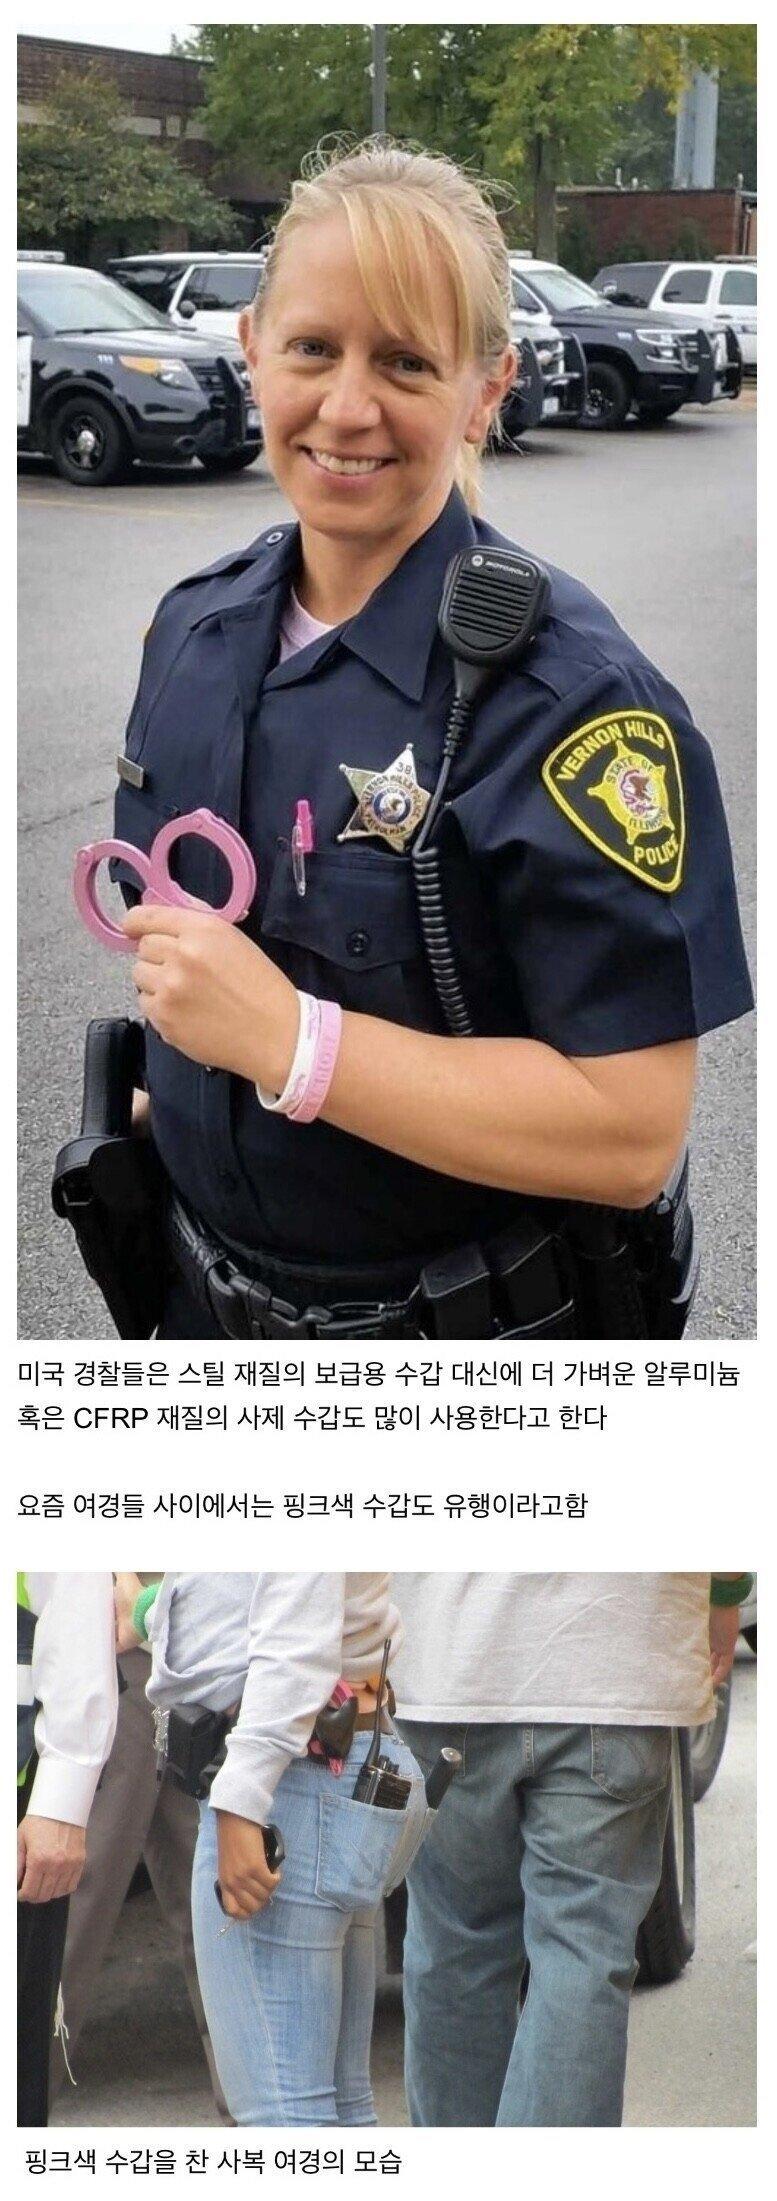 미국 여경 사이에서 유행중인 핑크 수갑.